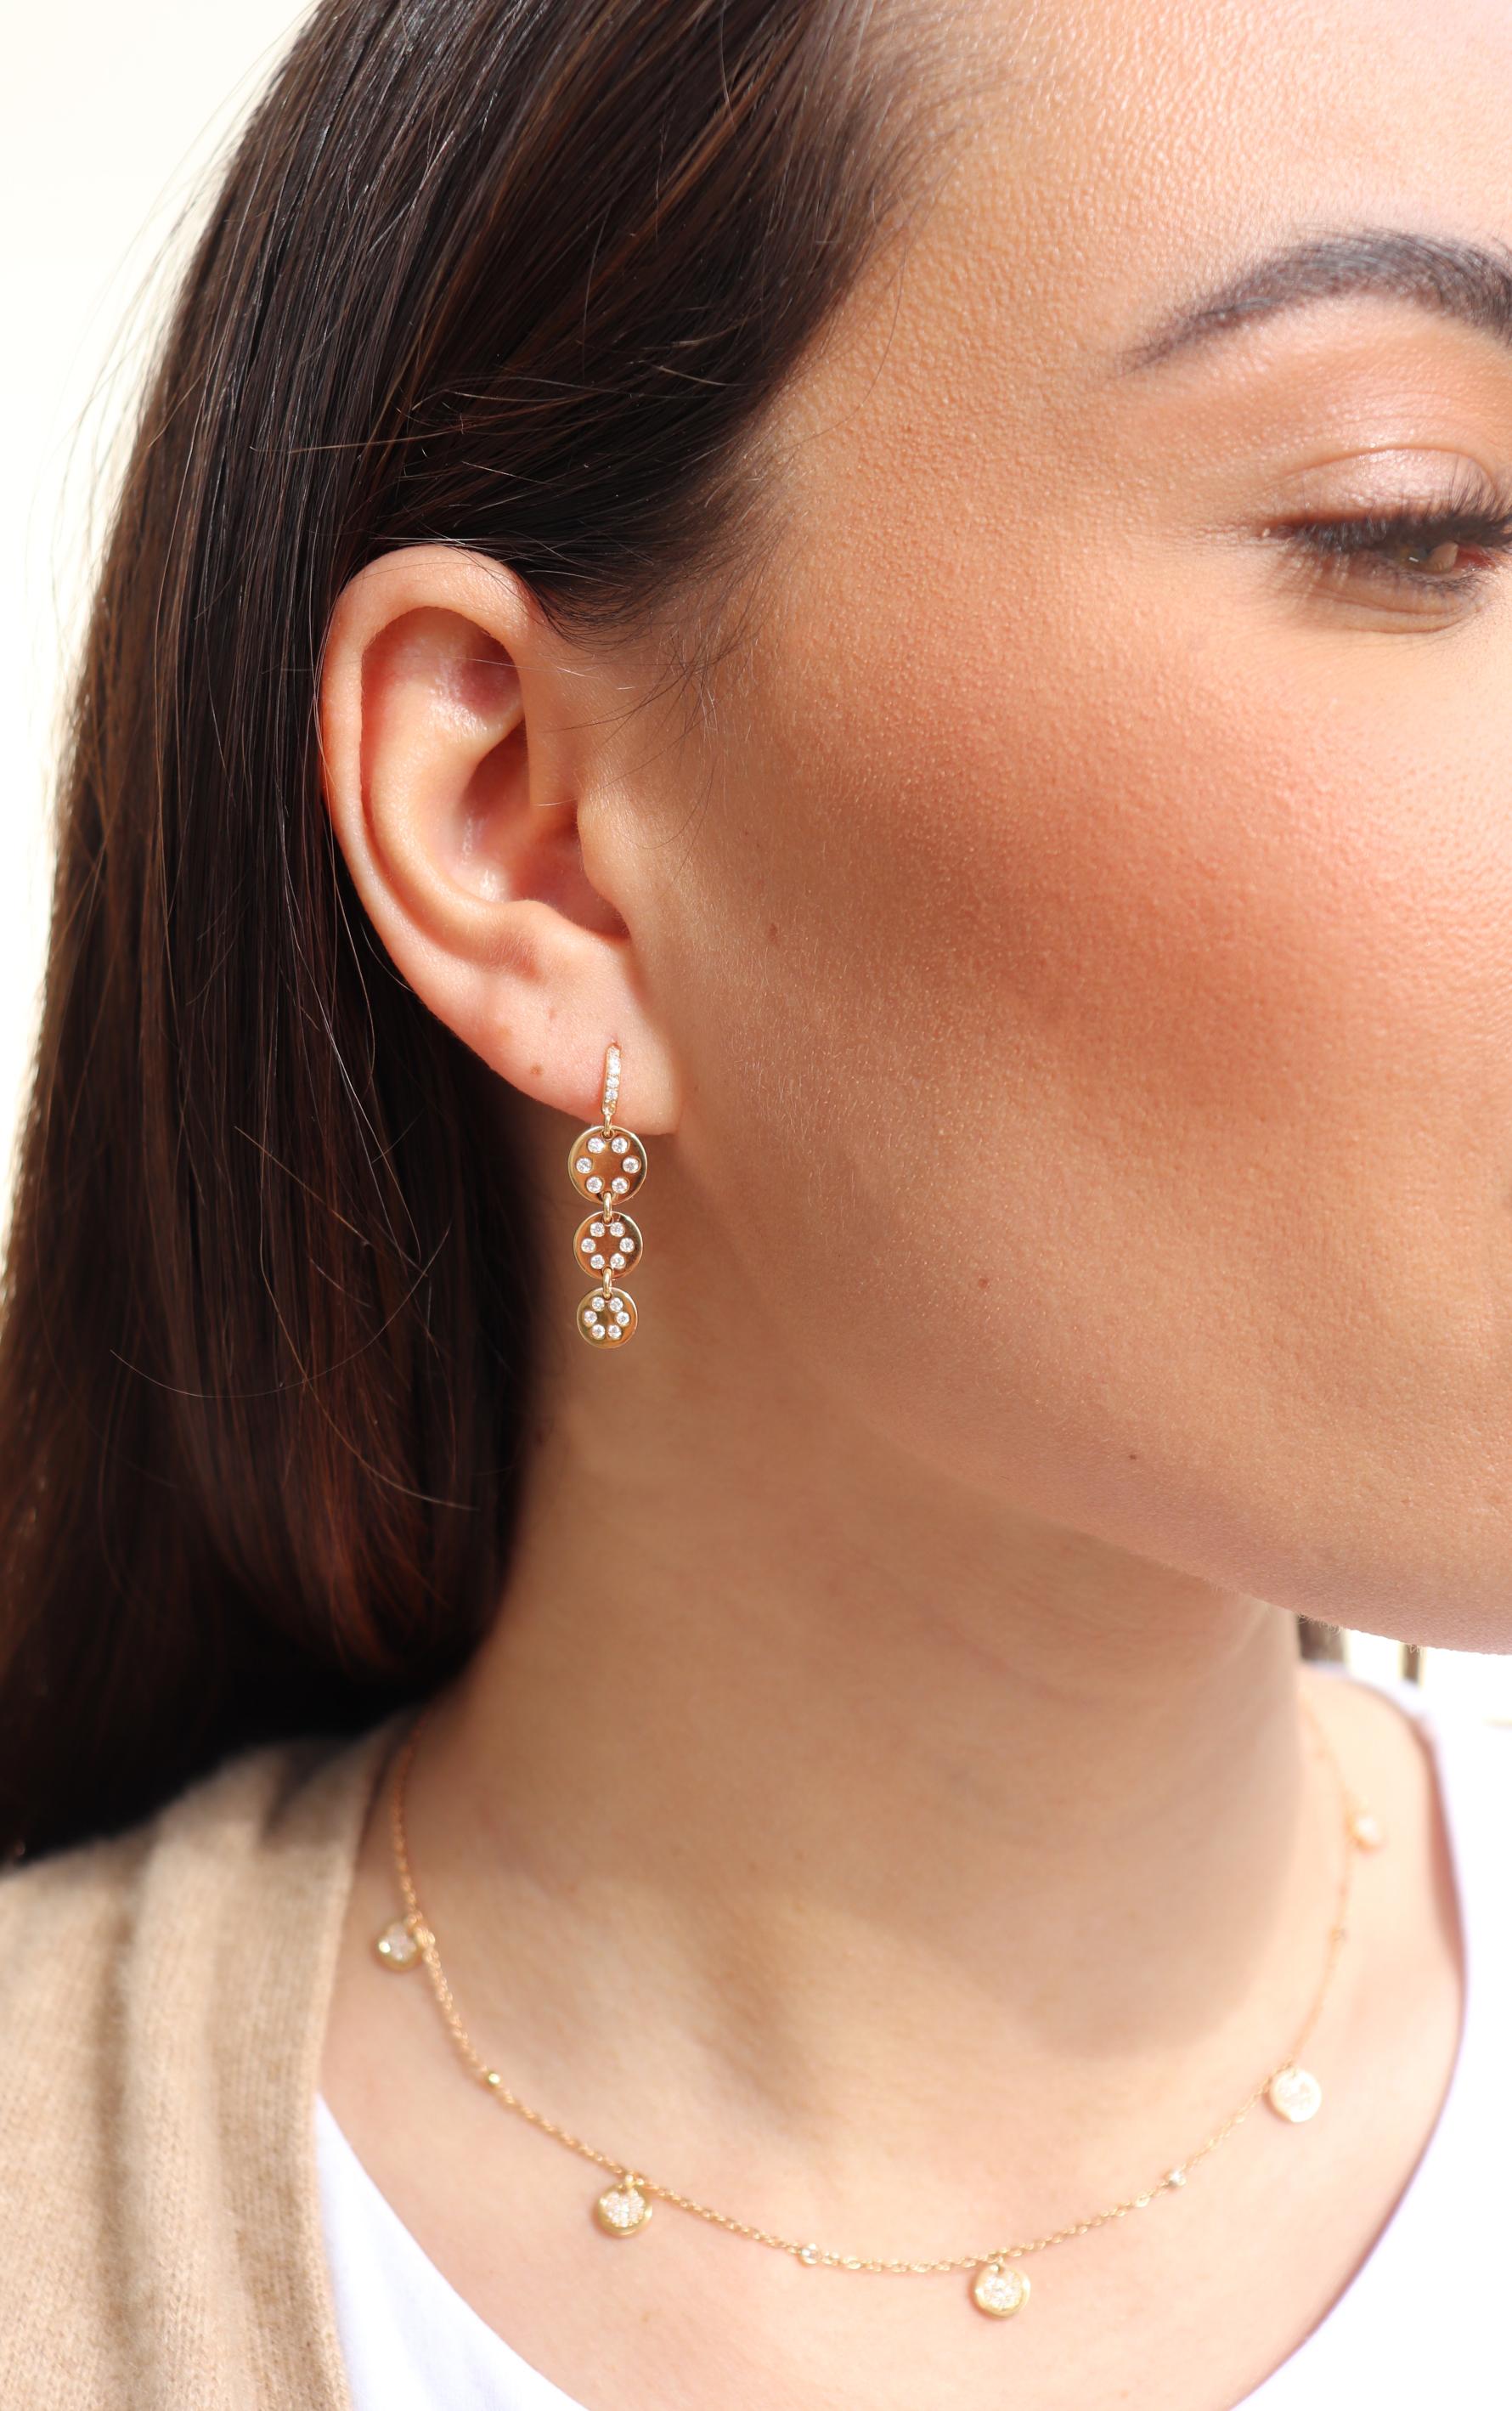 les boucles d'oreilles en or rose 18K sont de la collection Jackpot. Ces boucles d'oreilles de grande classe  sont constitués de 3 cercles, chacun orné de diamants ronds incolores d'une valeur totale de 0,32 carat. Le poids total du métal est de